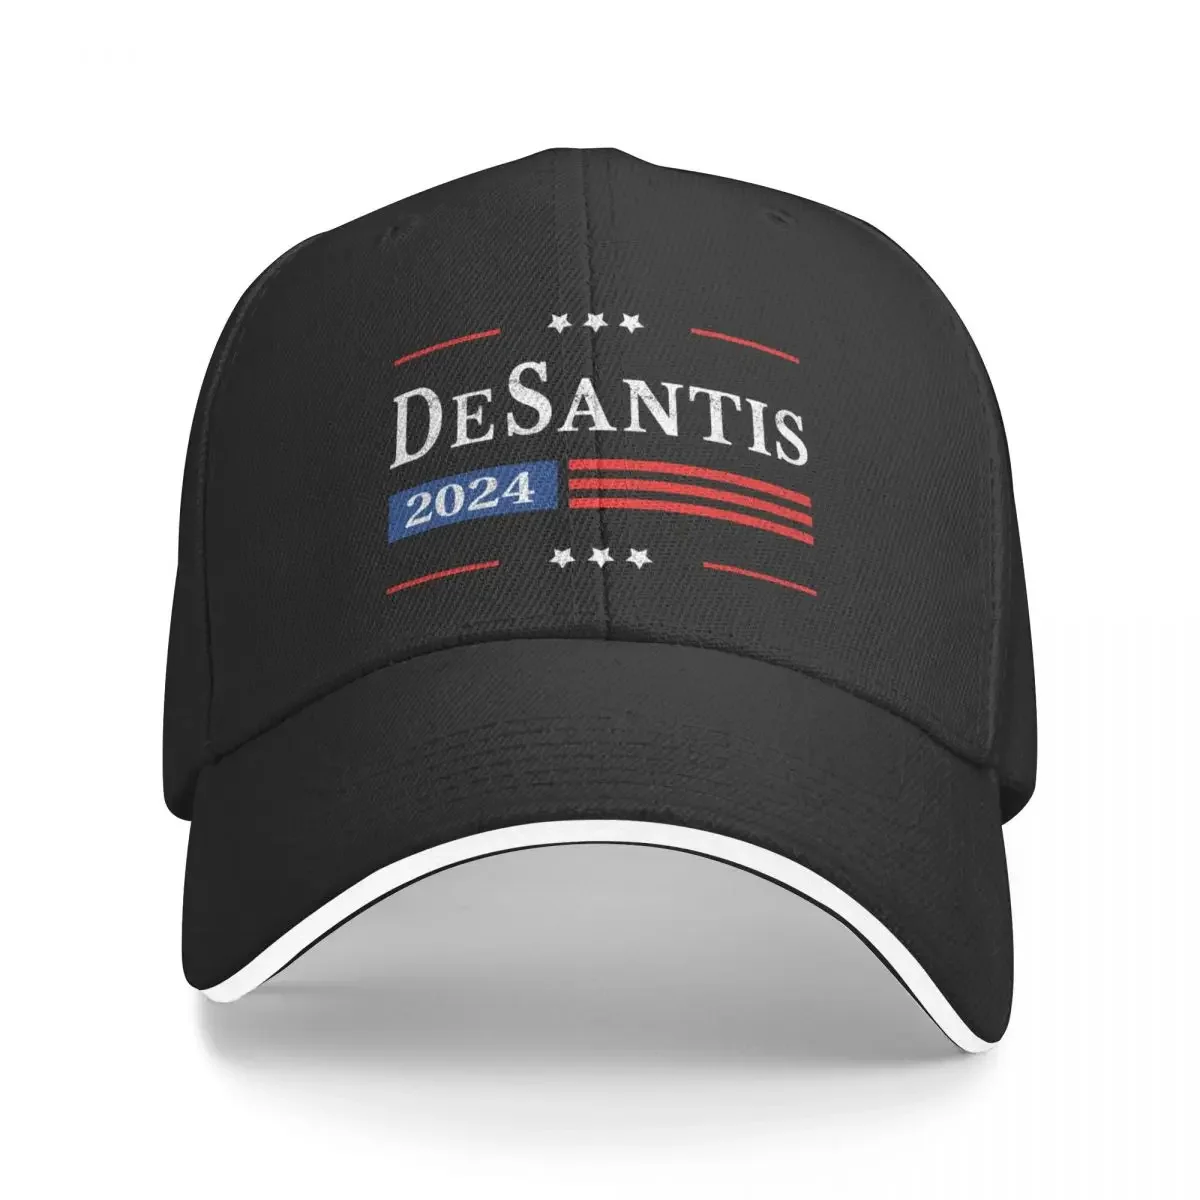 

Ron Desantis 2024 For President American Flag Retro Vintage Pro Baseball Cap Rugby Trucker Cap Sun Hats For Women Men's